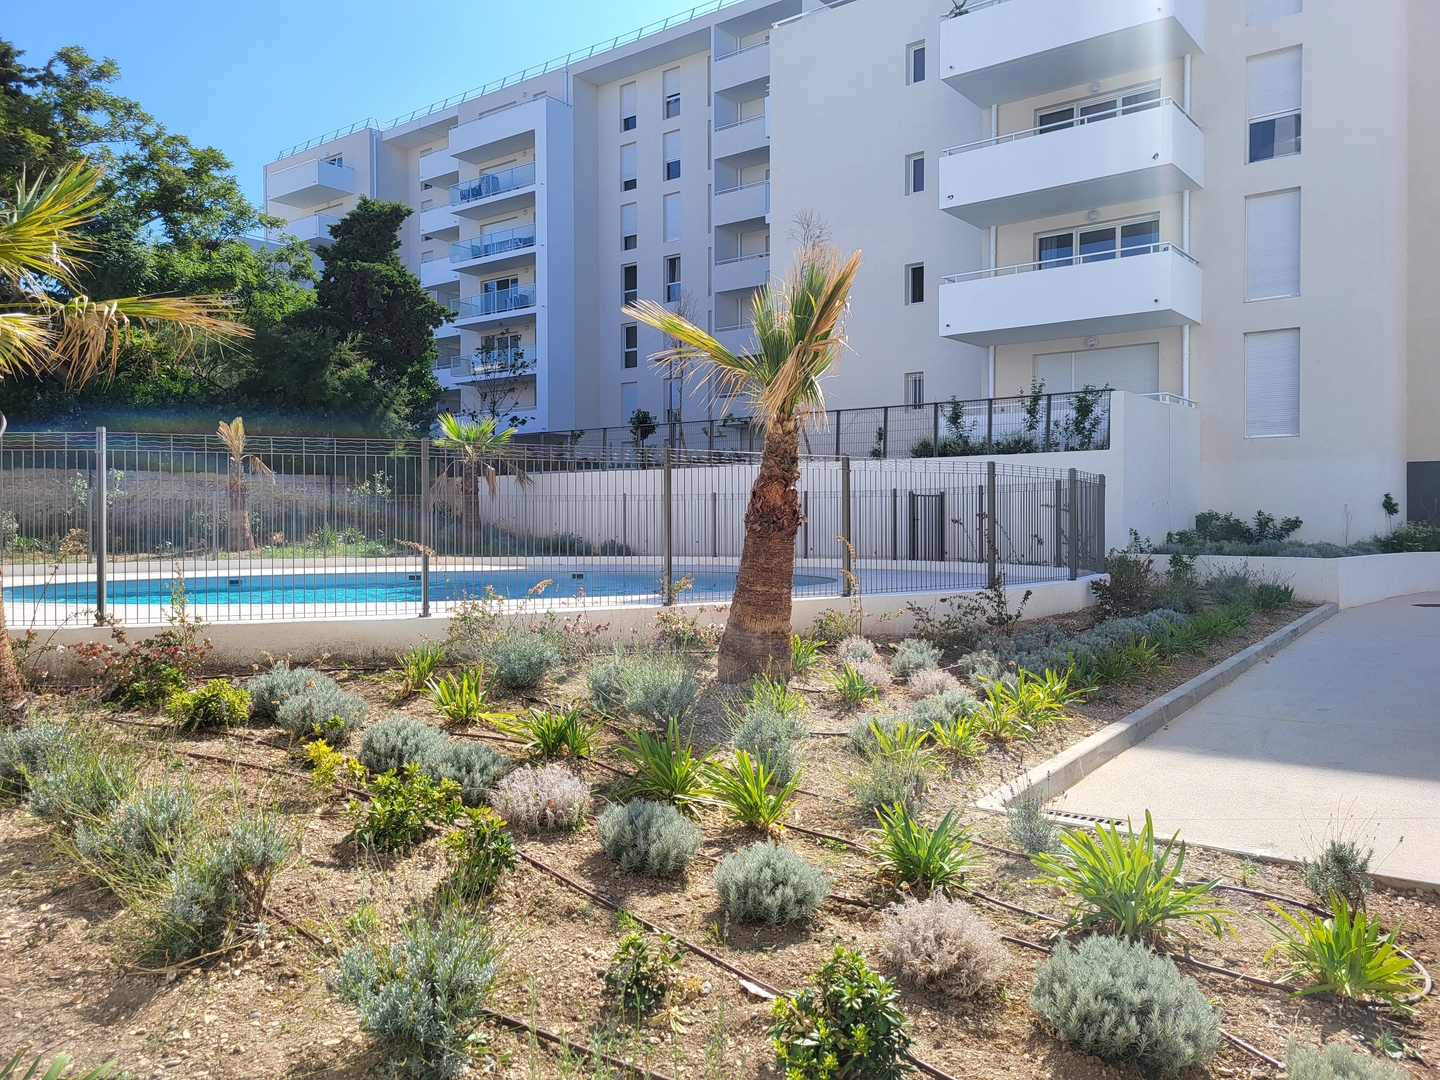 Programme Immobilier neuf MEE VUES à Marseille 8e Arrondissement (13)